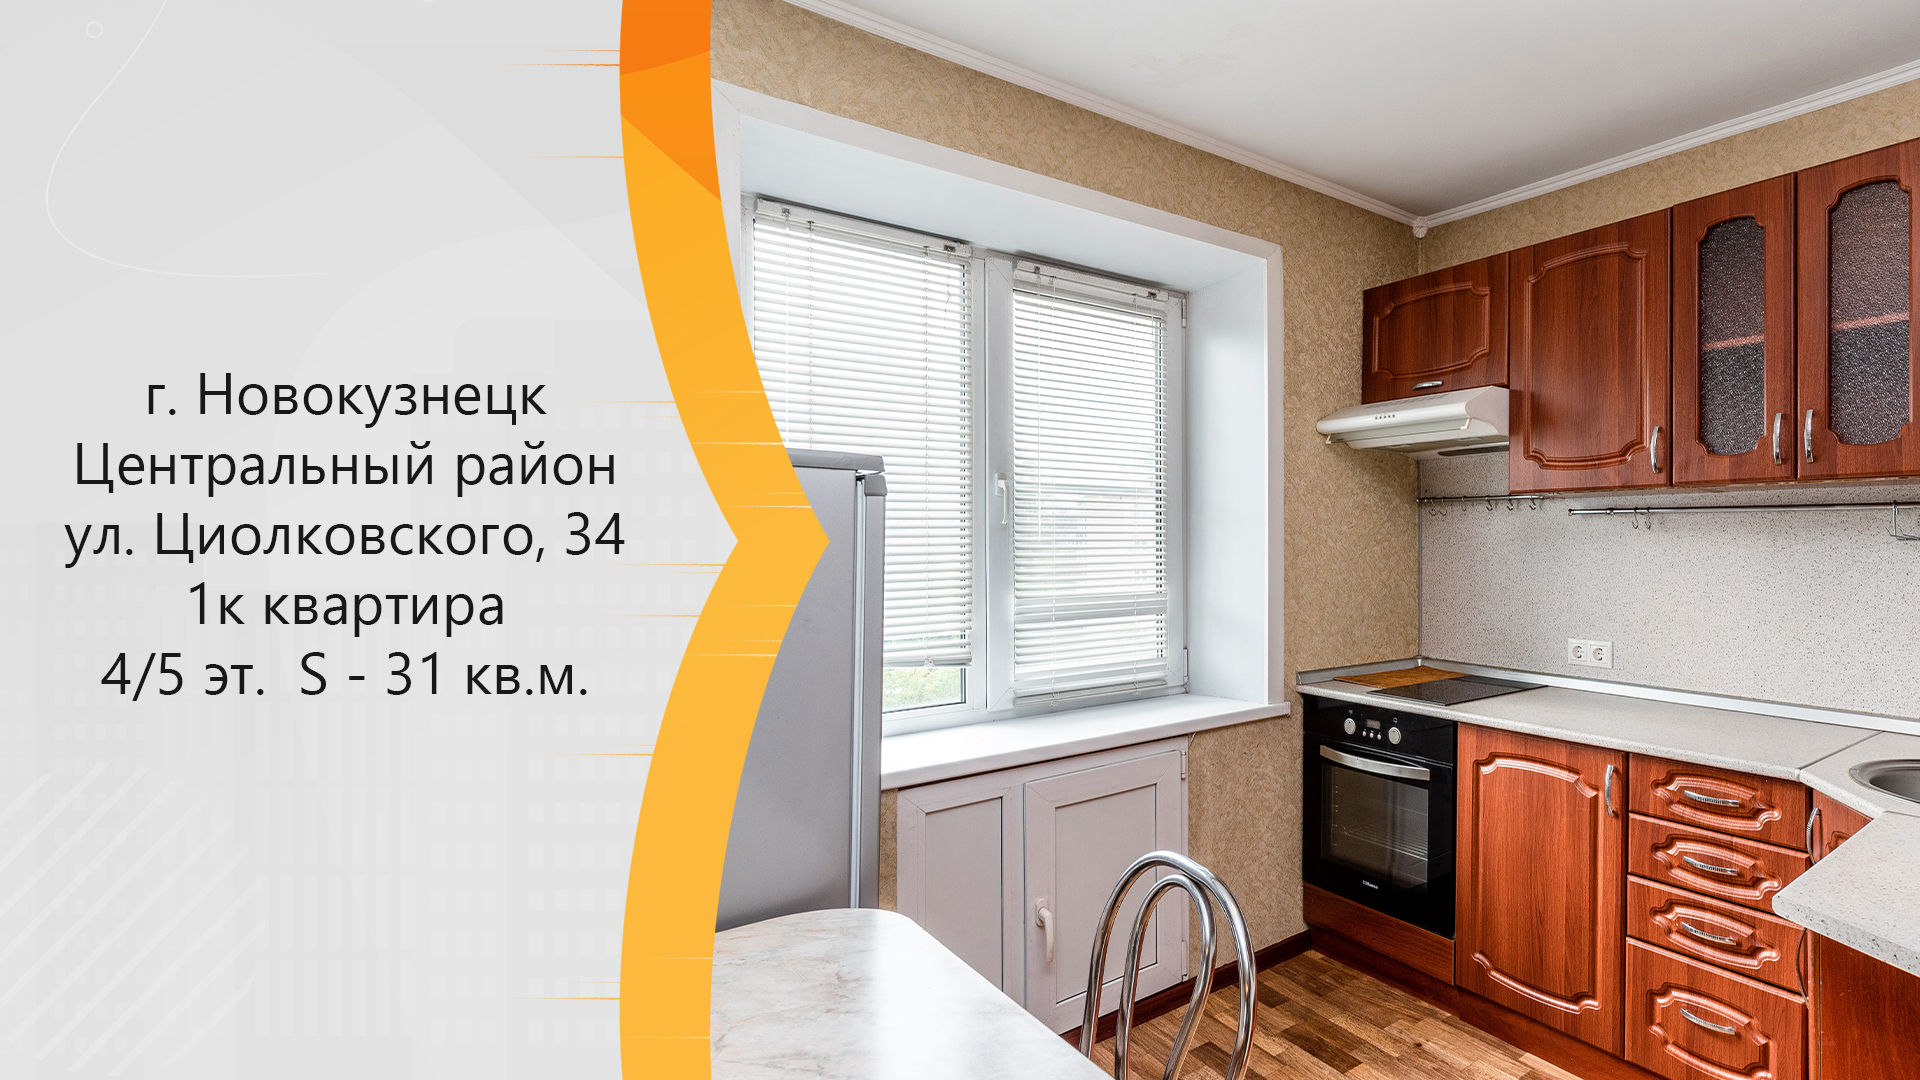 4 комнатные квартиры новокузнецк. Купить квартиру на Циолковского в Новокузнецке.